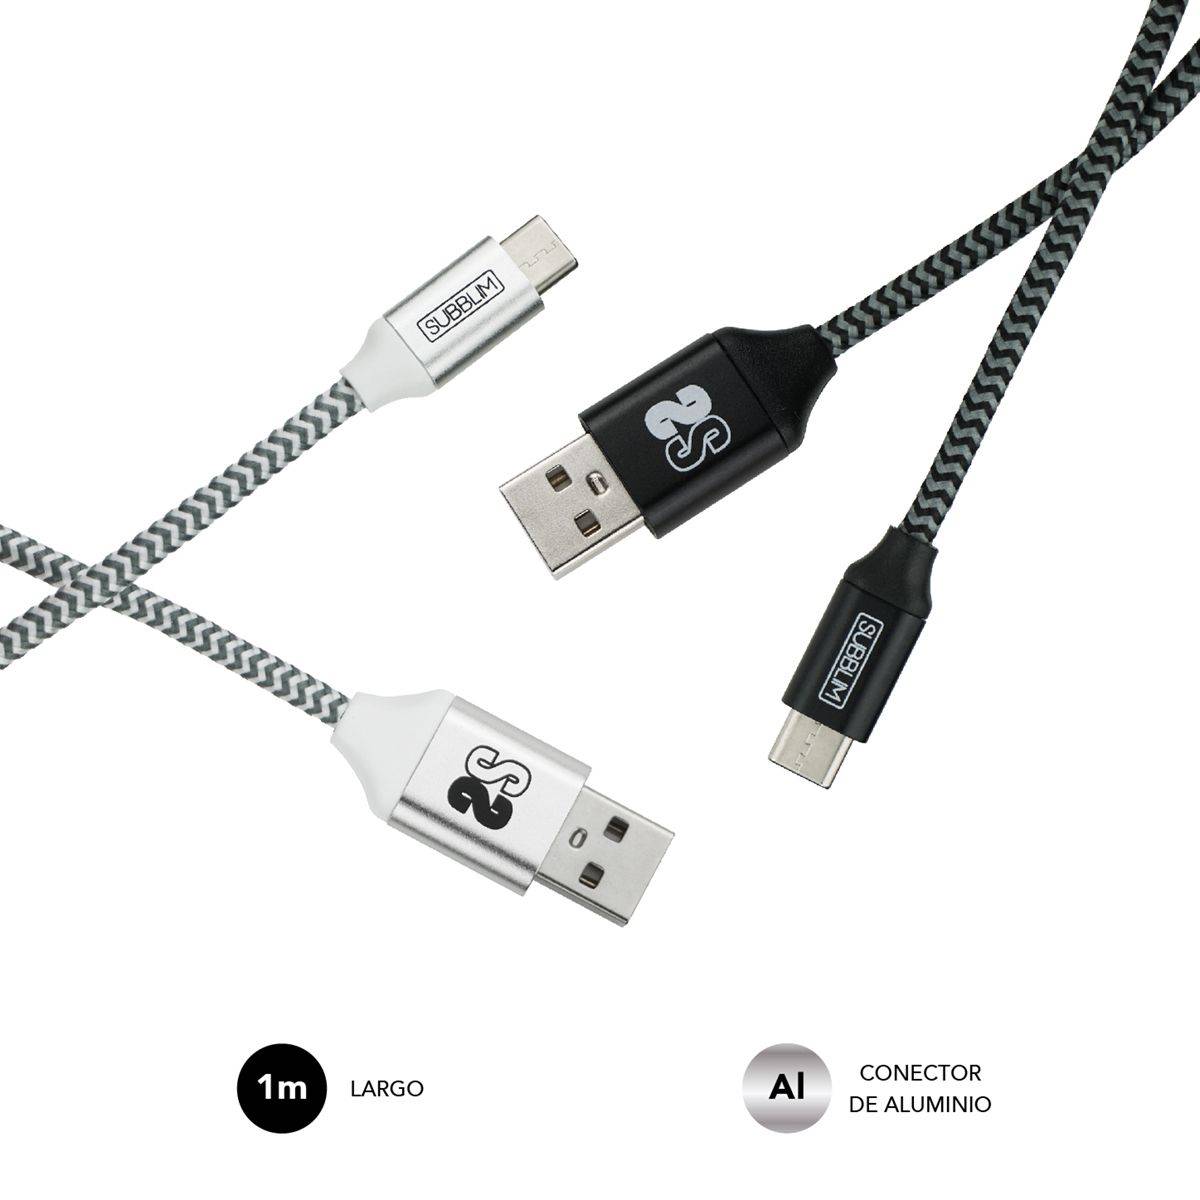 Câble de Charge et de Données Haute Vitesse Subblim - 1m - Charge Rapide jusqu'à 5V/3.0A - Synchronisation des Données jusqu'à 5Gbps - Fibre de Nylon Résistante - Sangle Velcro Incluse - Connecteurs en Aluminium - Couleur Noir